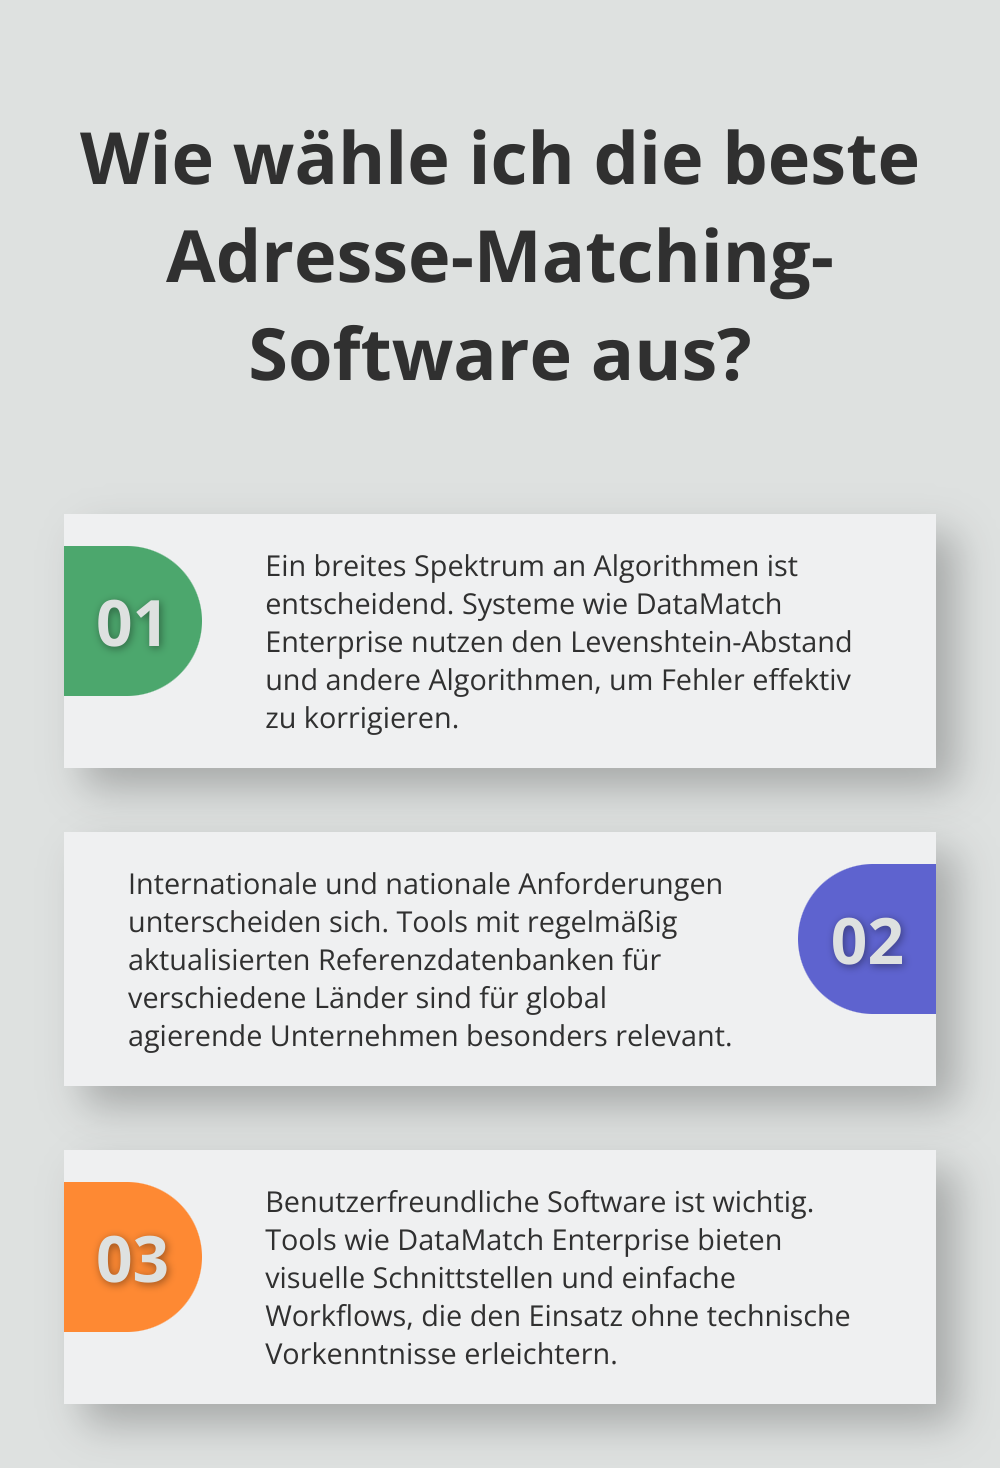 Fact - Wie wähle ich die beste Adresse-Matching-Software aus?